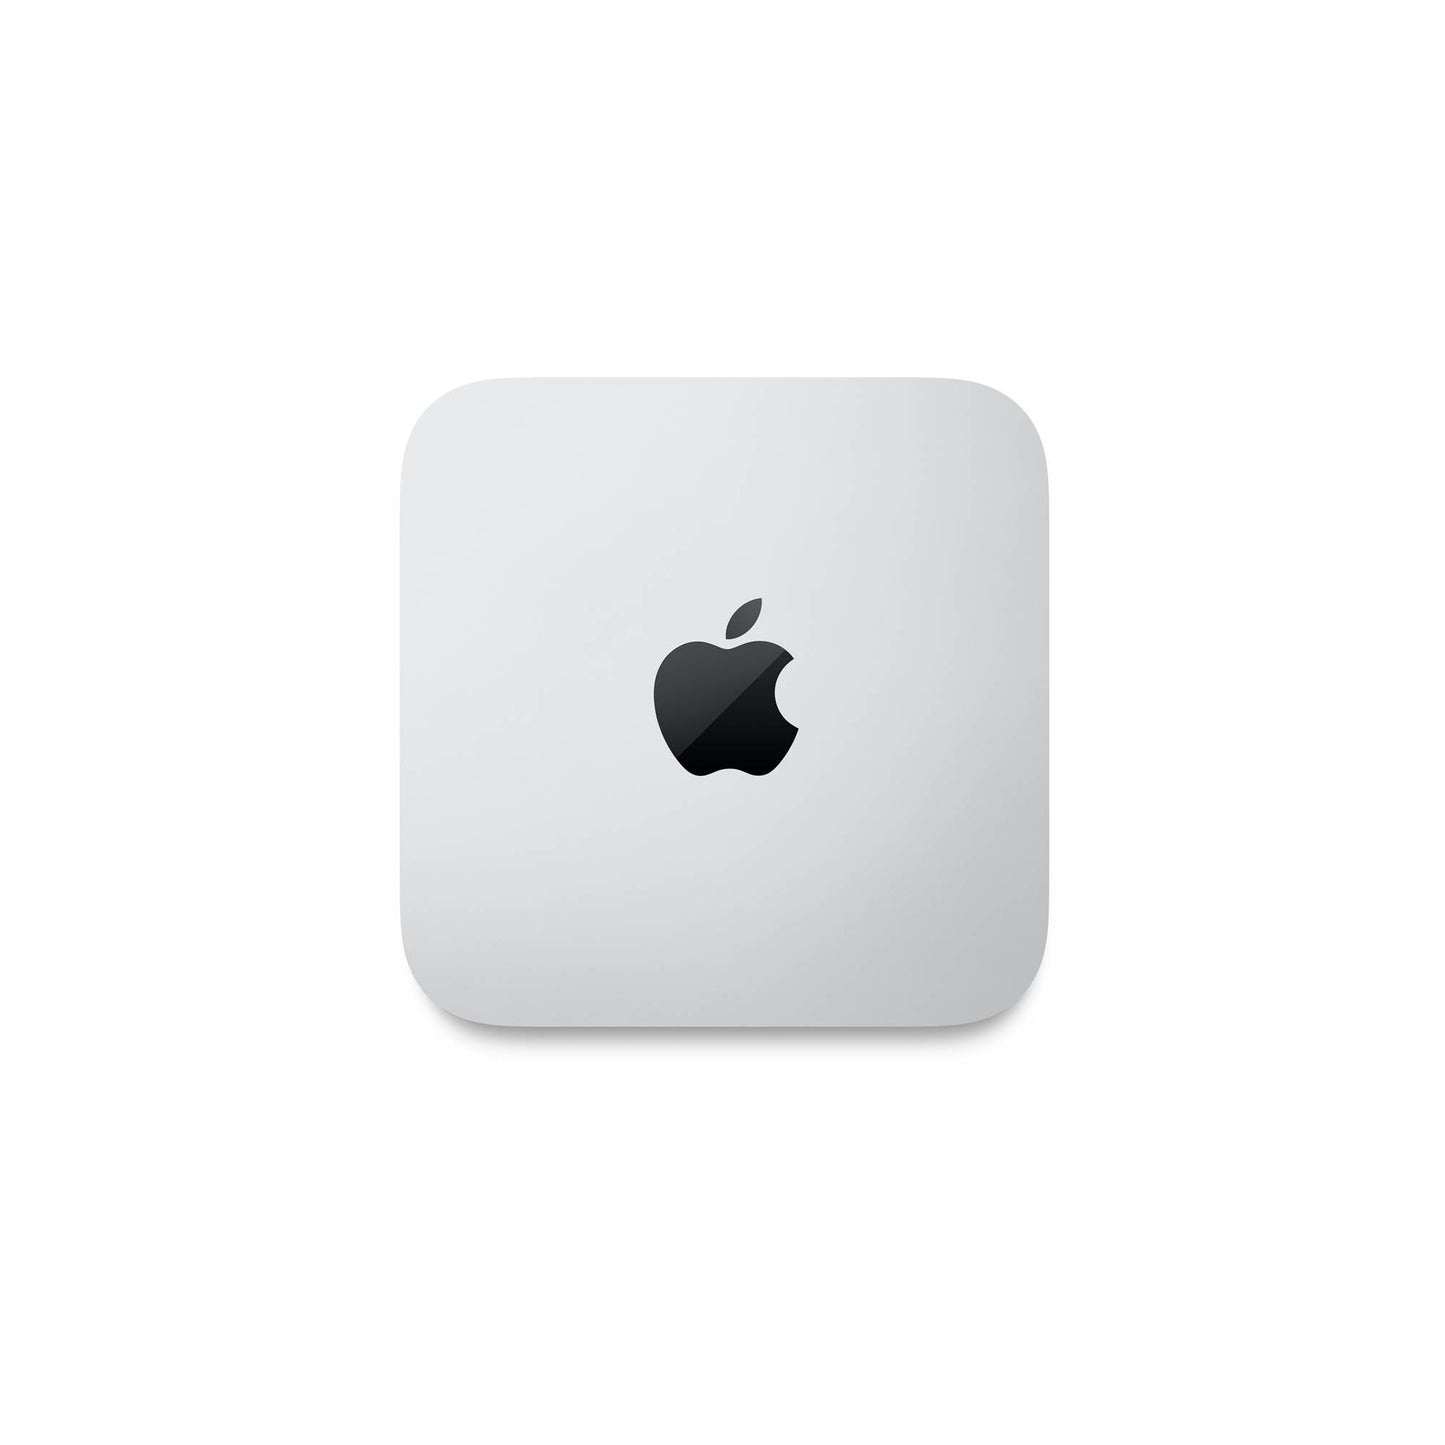 Mac mini: Apple M2 Pro chip